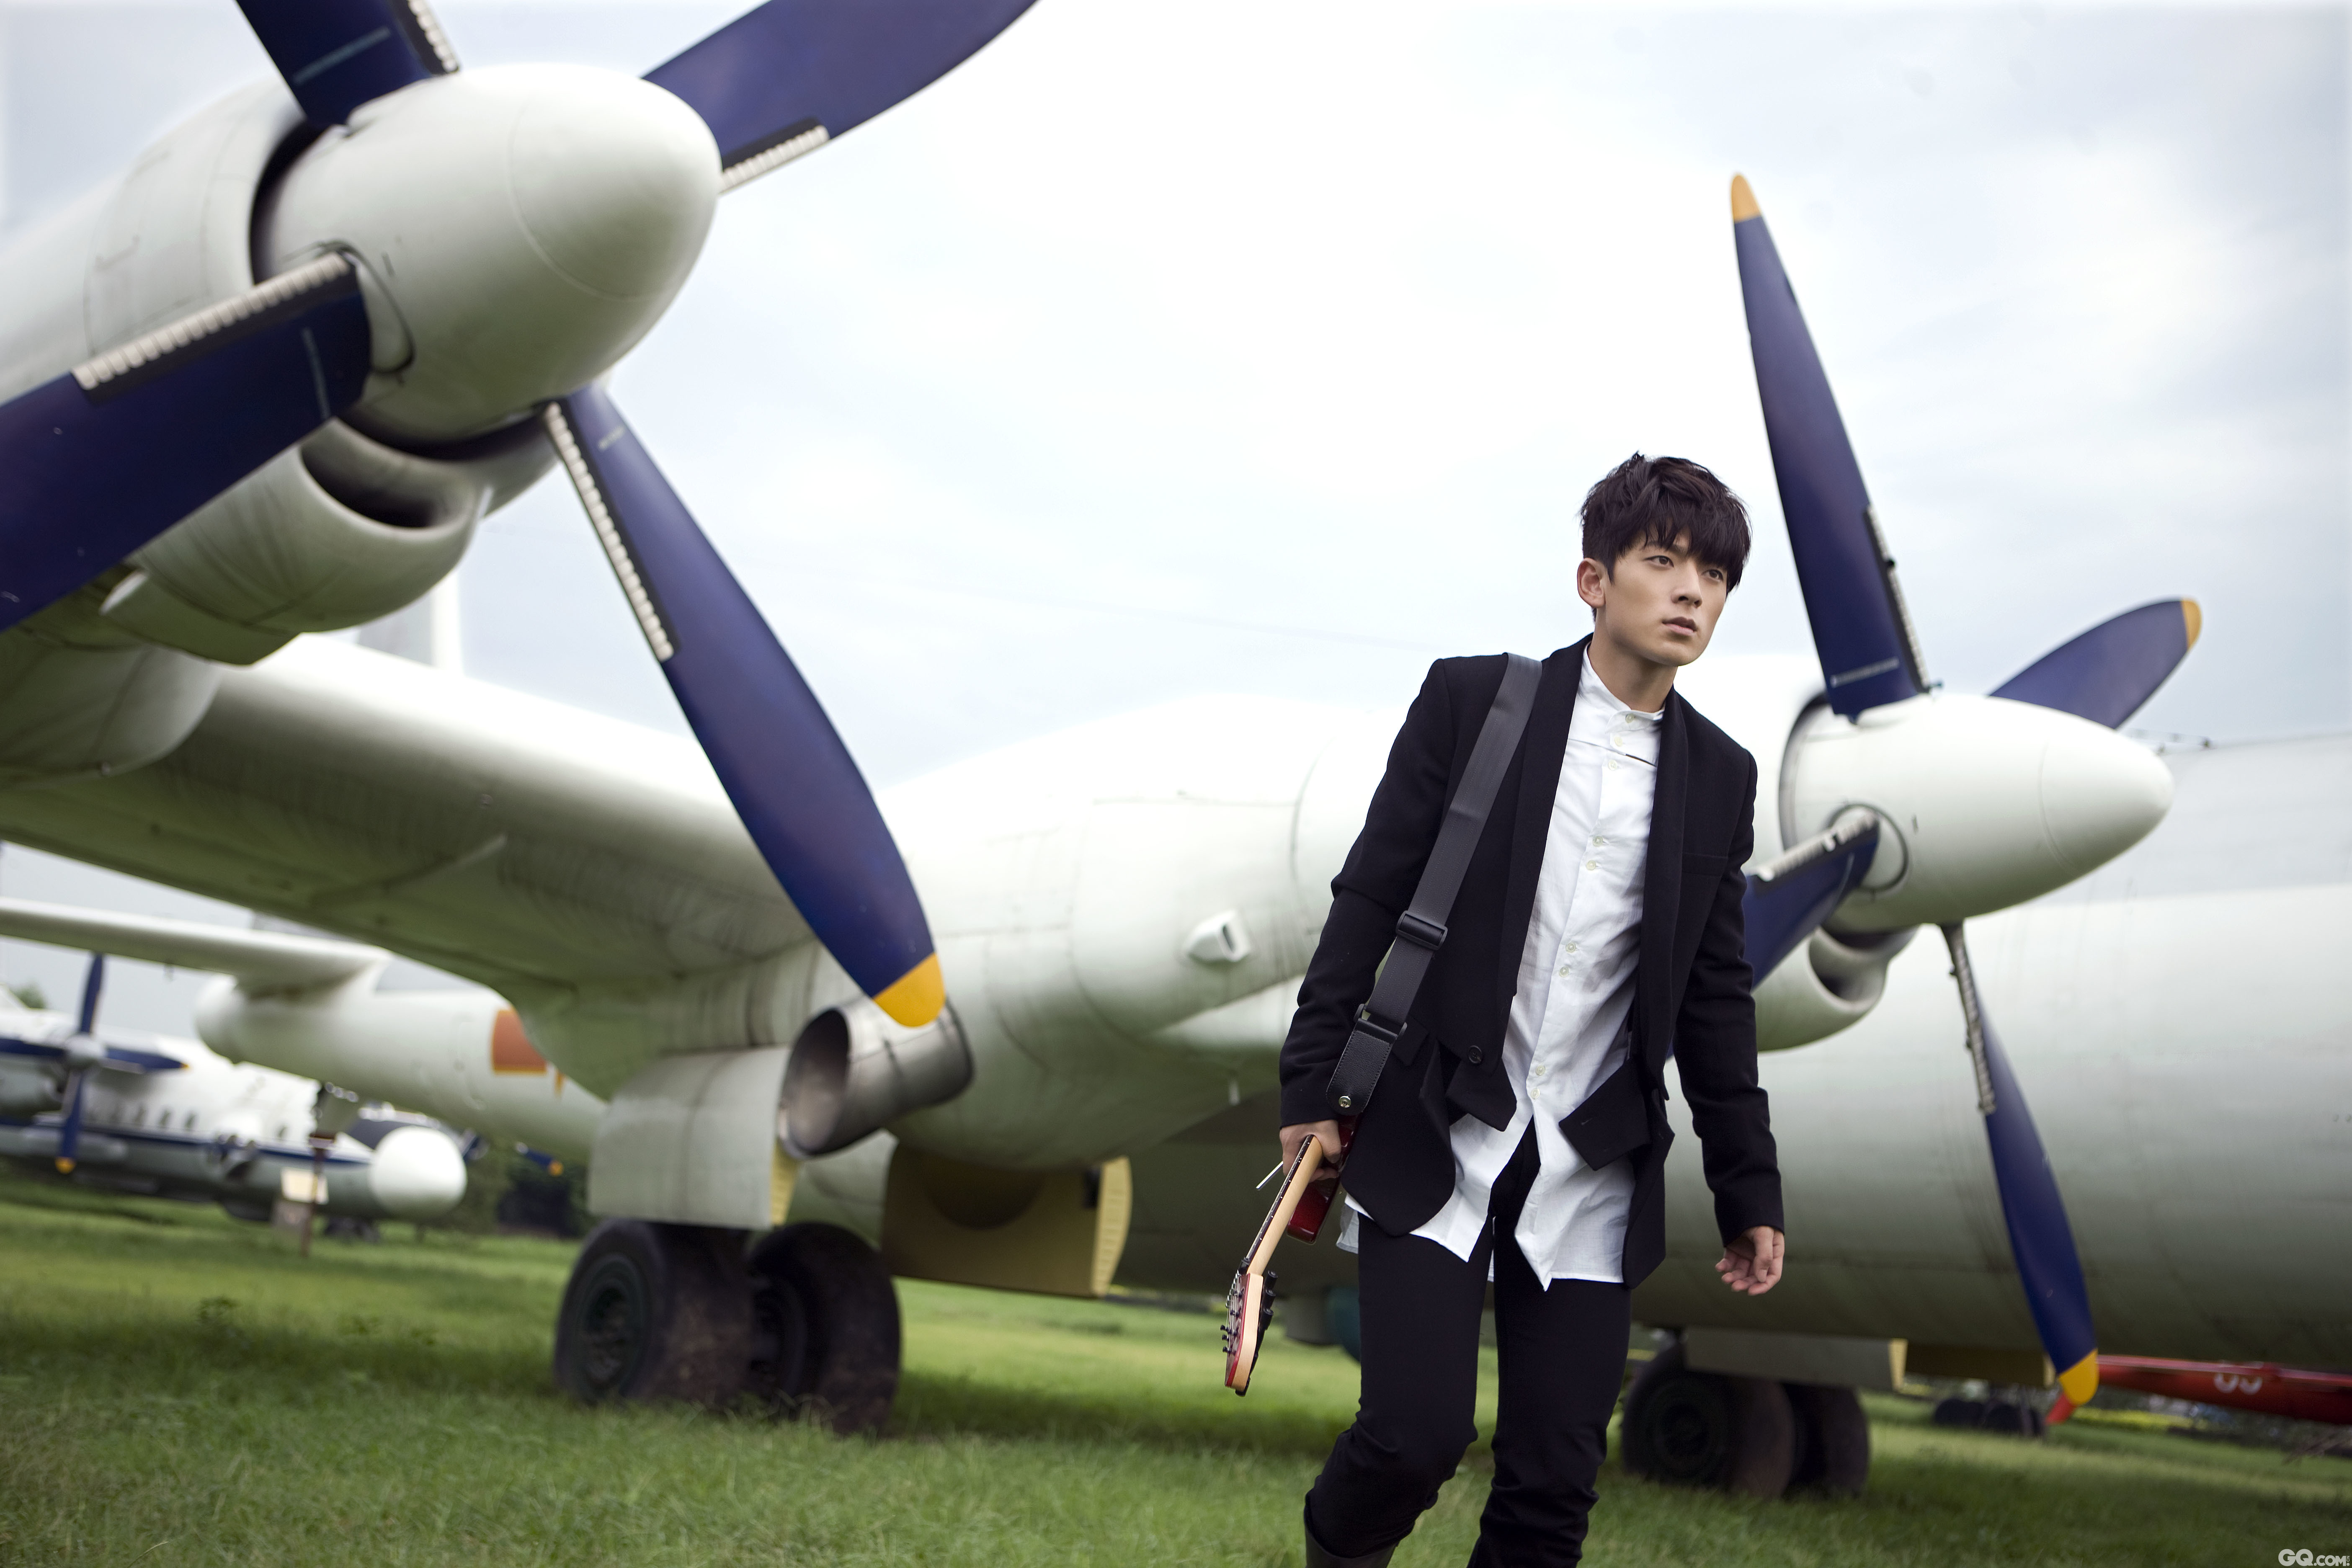 2011年，陈翔拍摄写真。他身着黑外套白衬衣，简约装扮而又帅气逼人，行走在机翼间。
